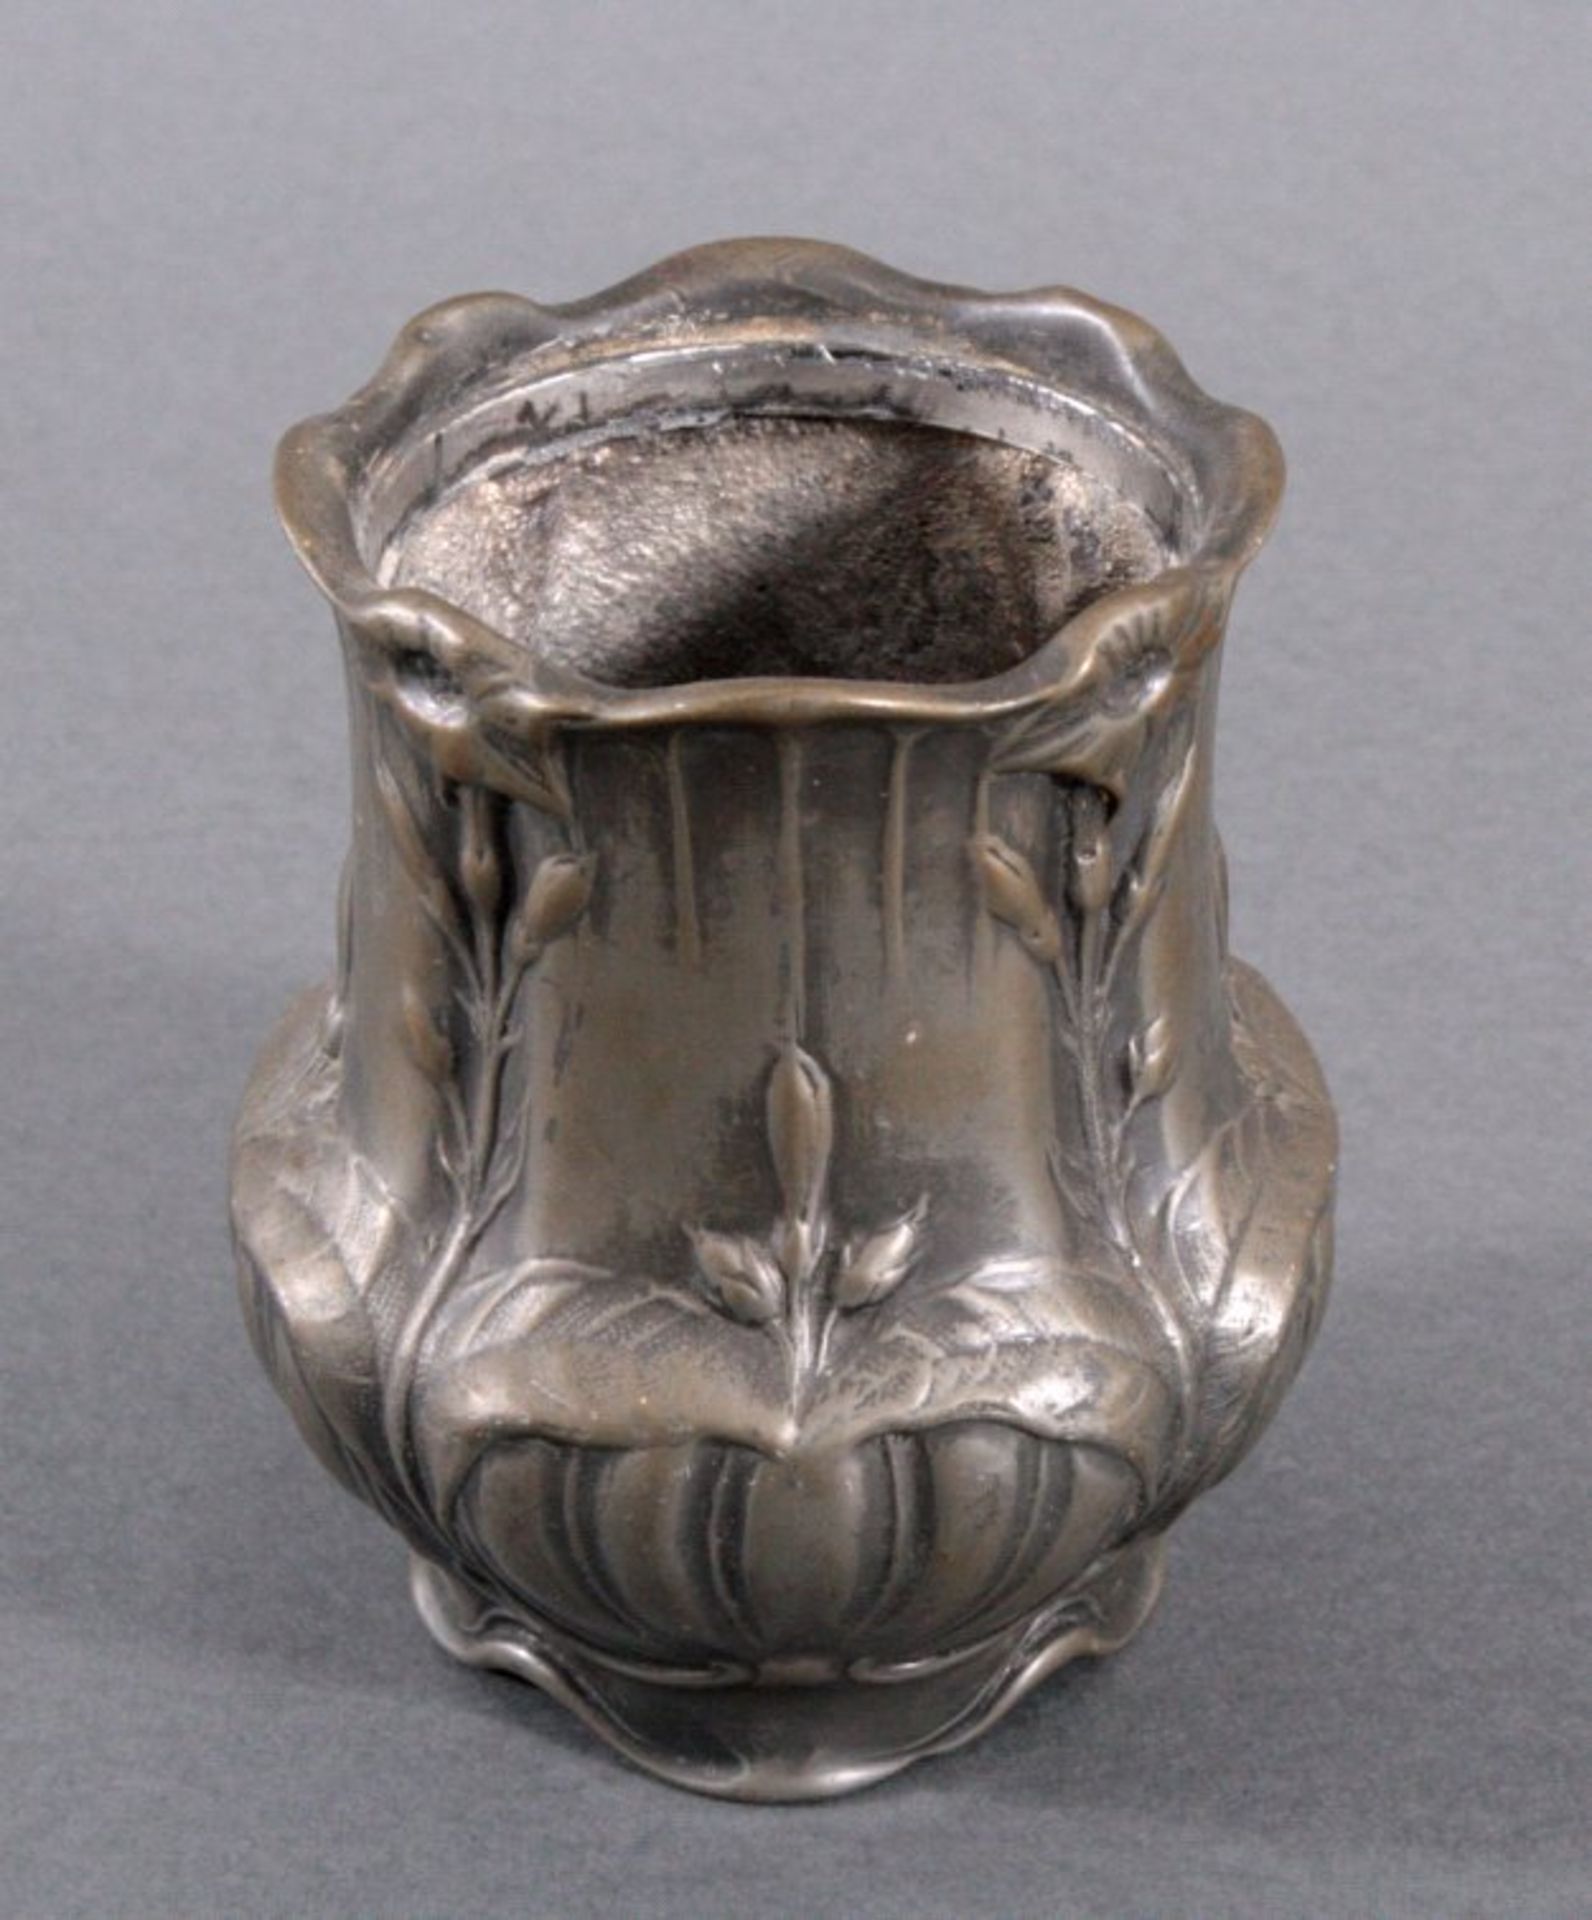 Jugendstil-Vase aus ZinnGebauchte Form, umlaufend verziert mit Blumenmotiven,ungemarkt, ca. H-11, - Bild 2 aus 2